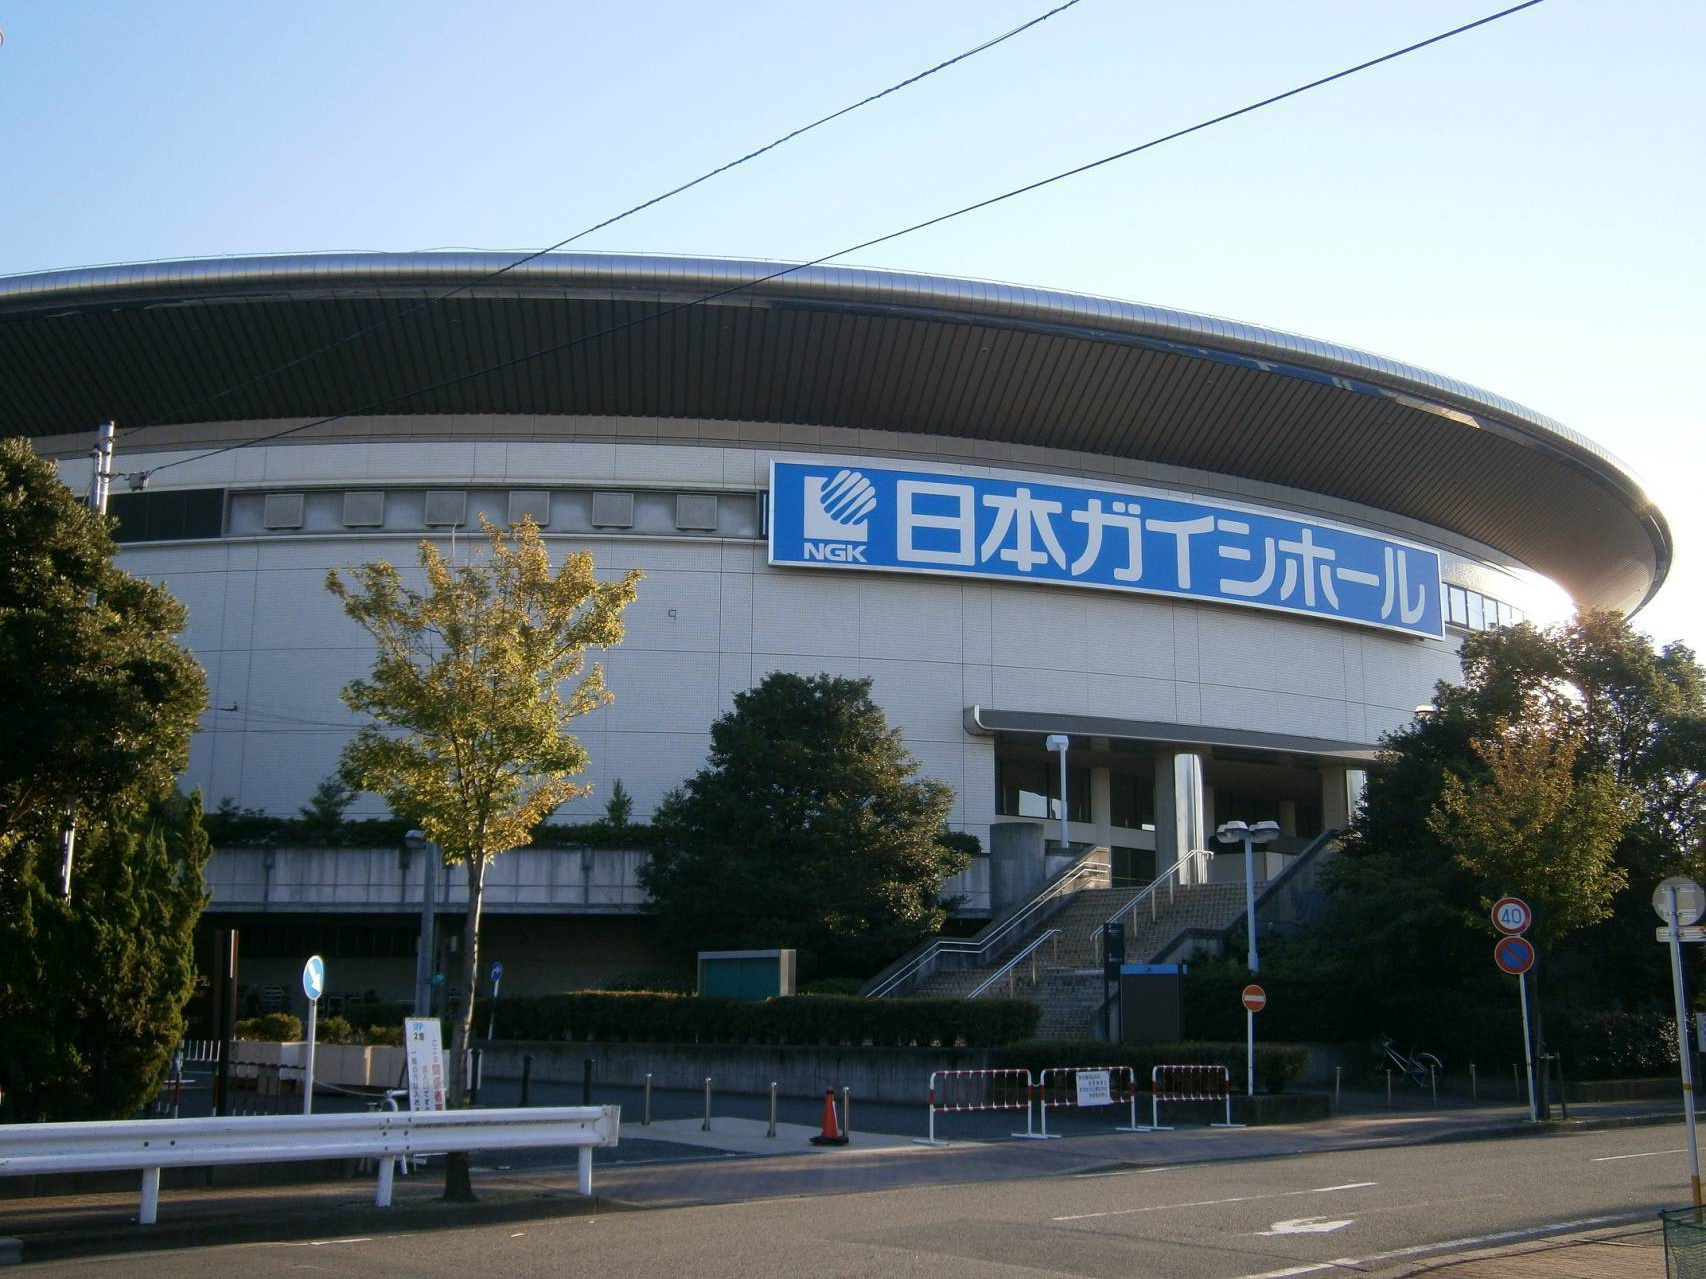 日本ガイシホール(名古屋市総合体育館)